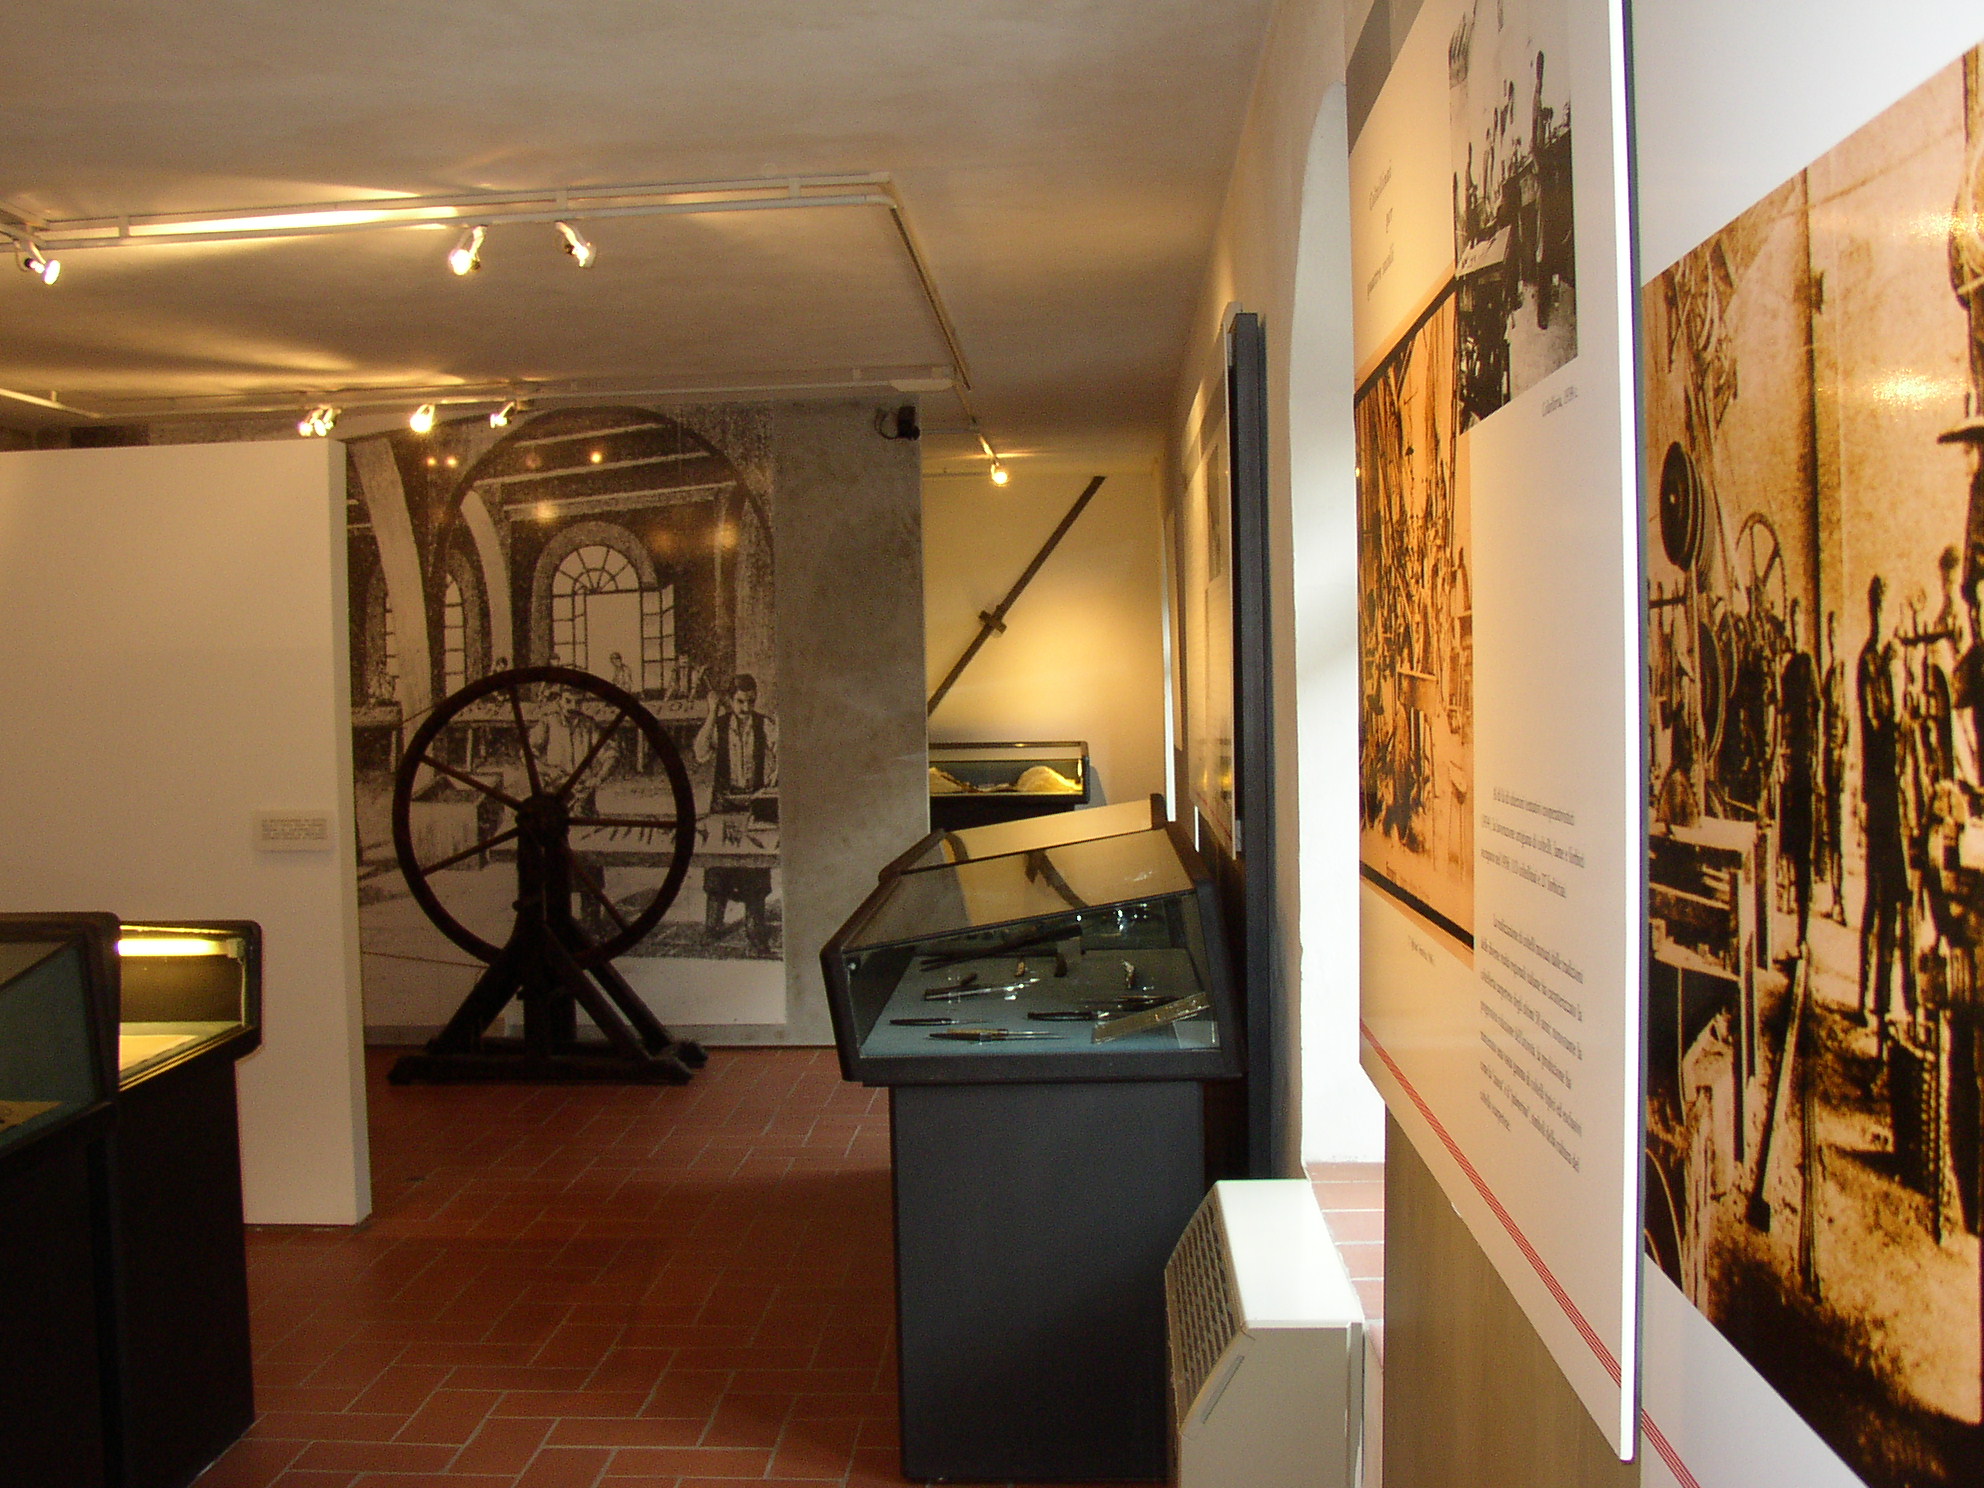 La Regione Toscana riconferma il proprio interesse per il Museo dei Ferri Taglienti